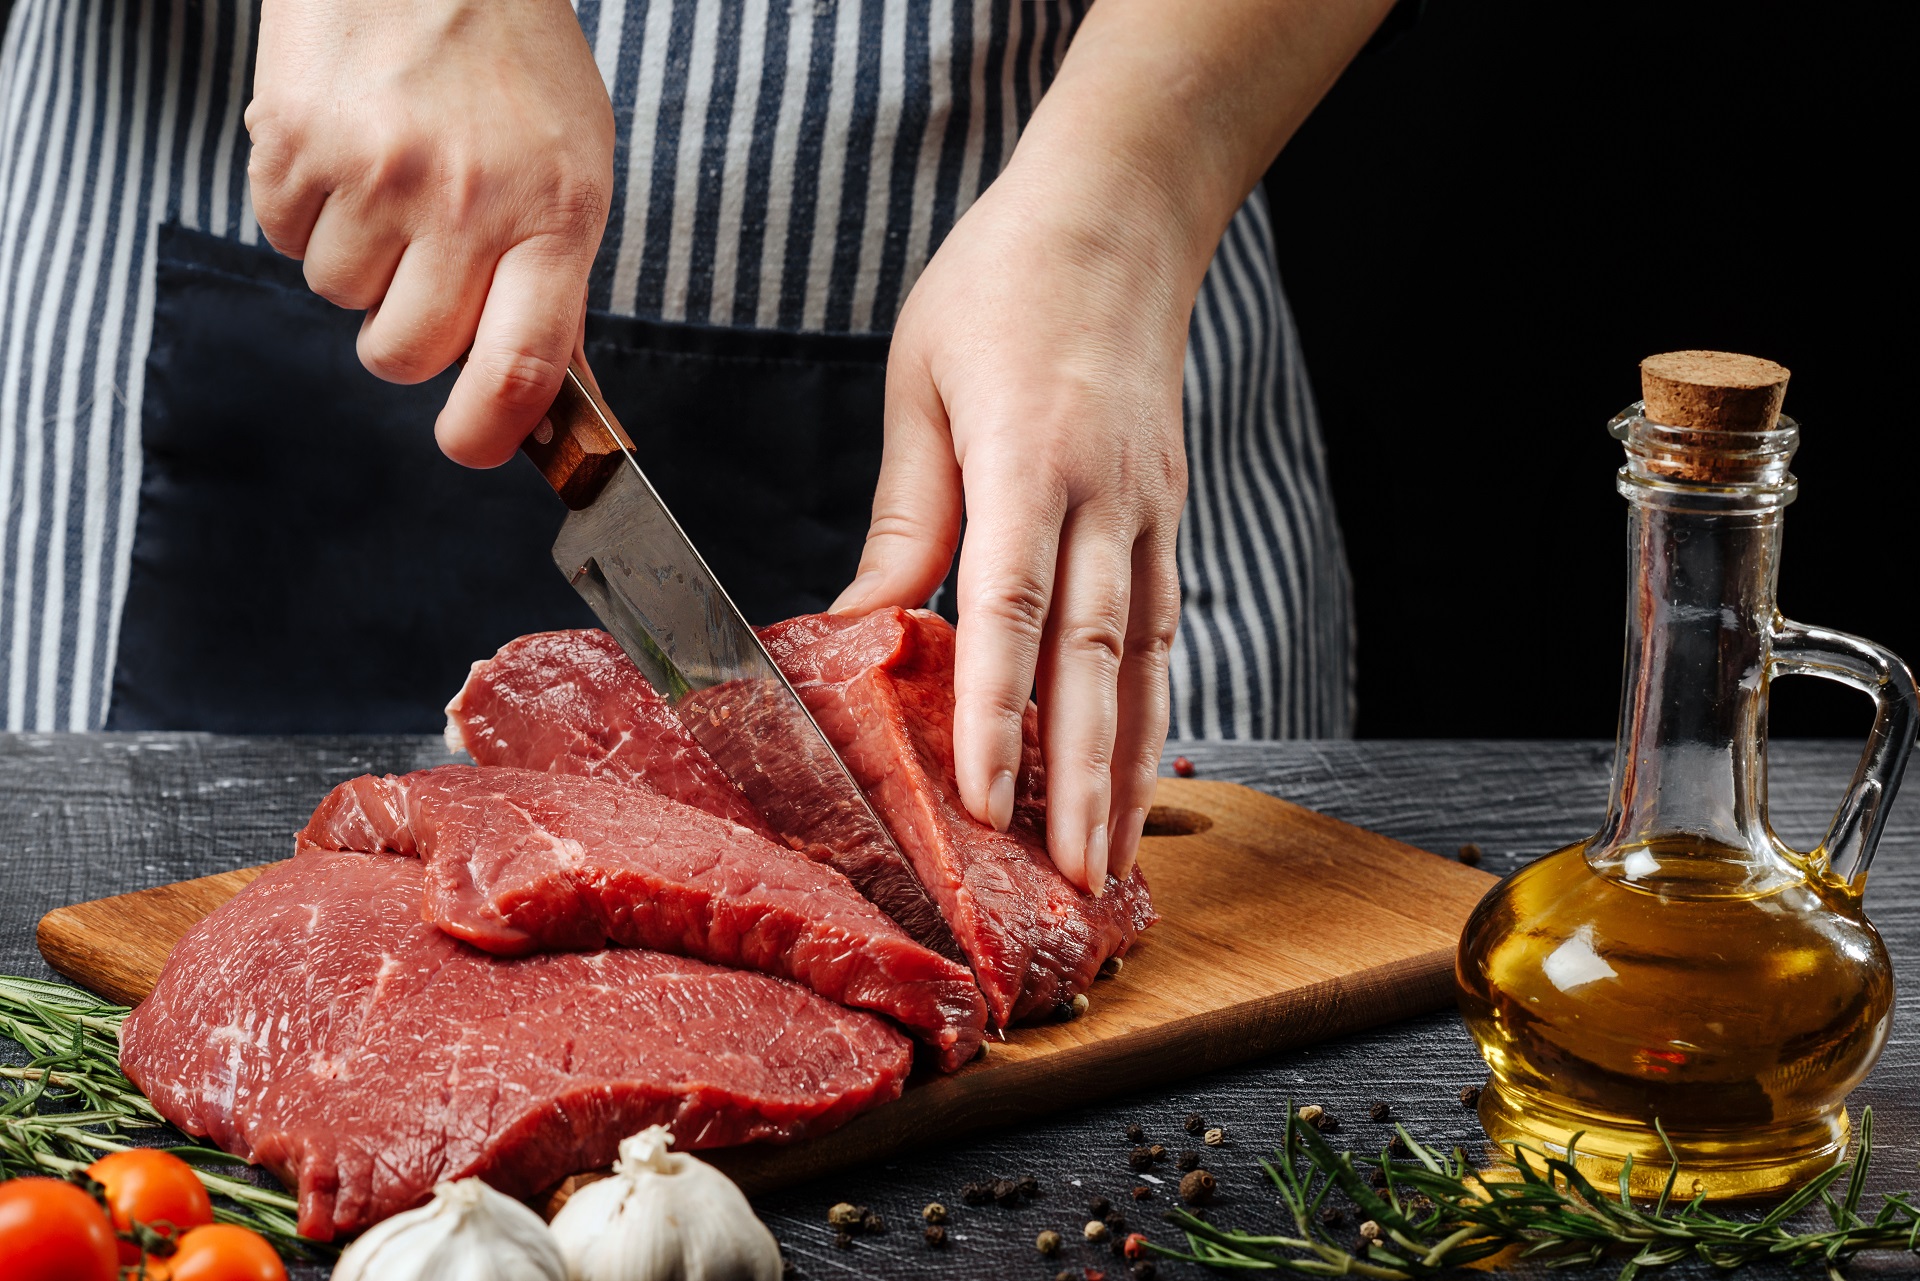 Al cocinar carnes rojas, evite los 5 errores más frecuentes% - Colbeef